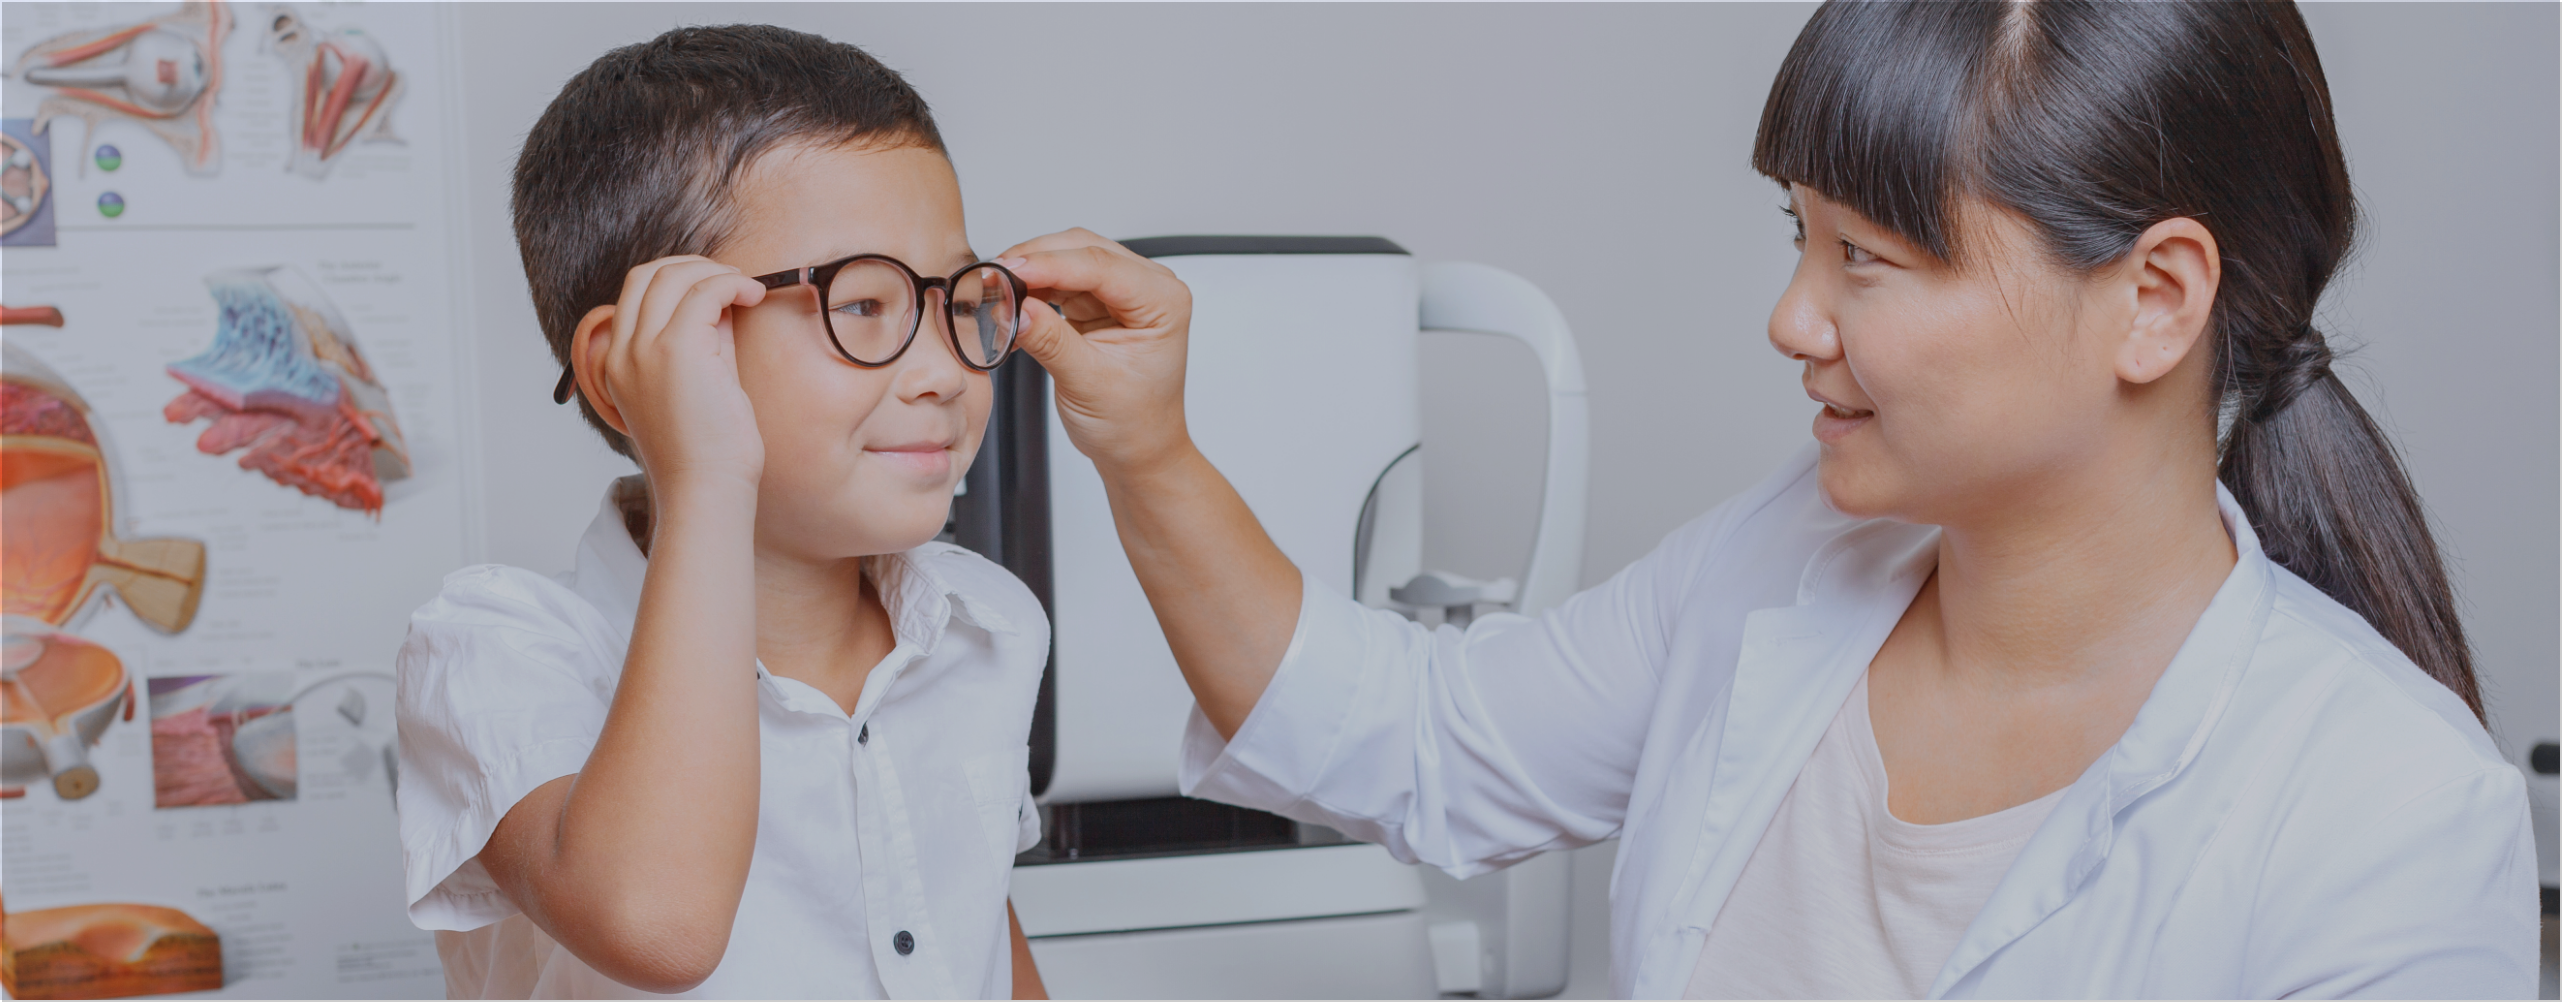 小児治療用眼鏡等の保険適用について